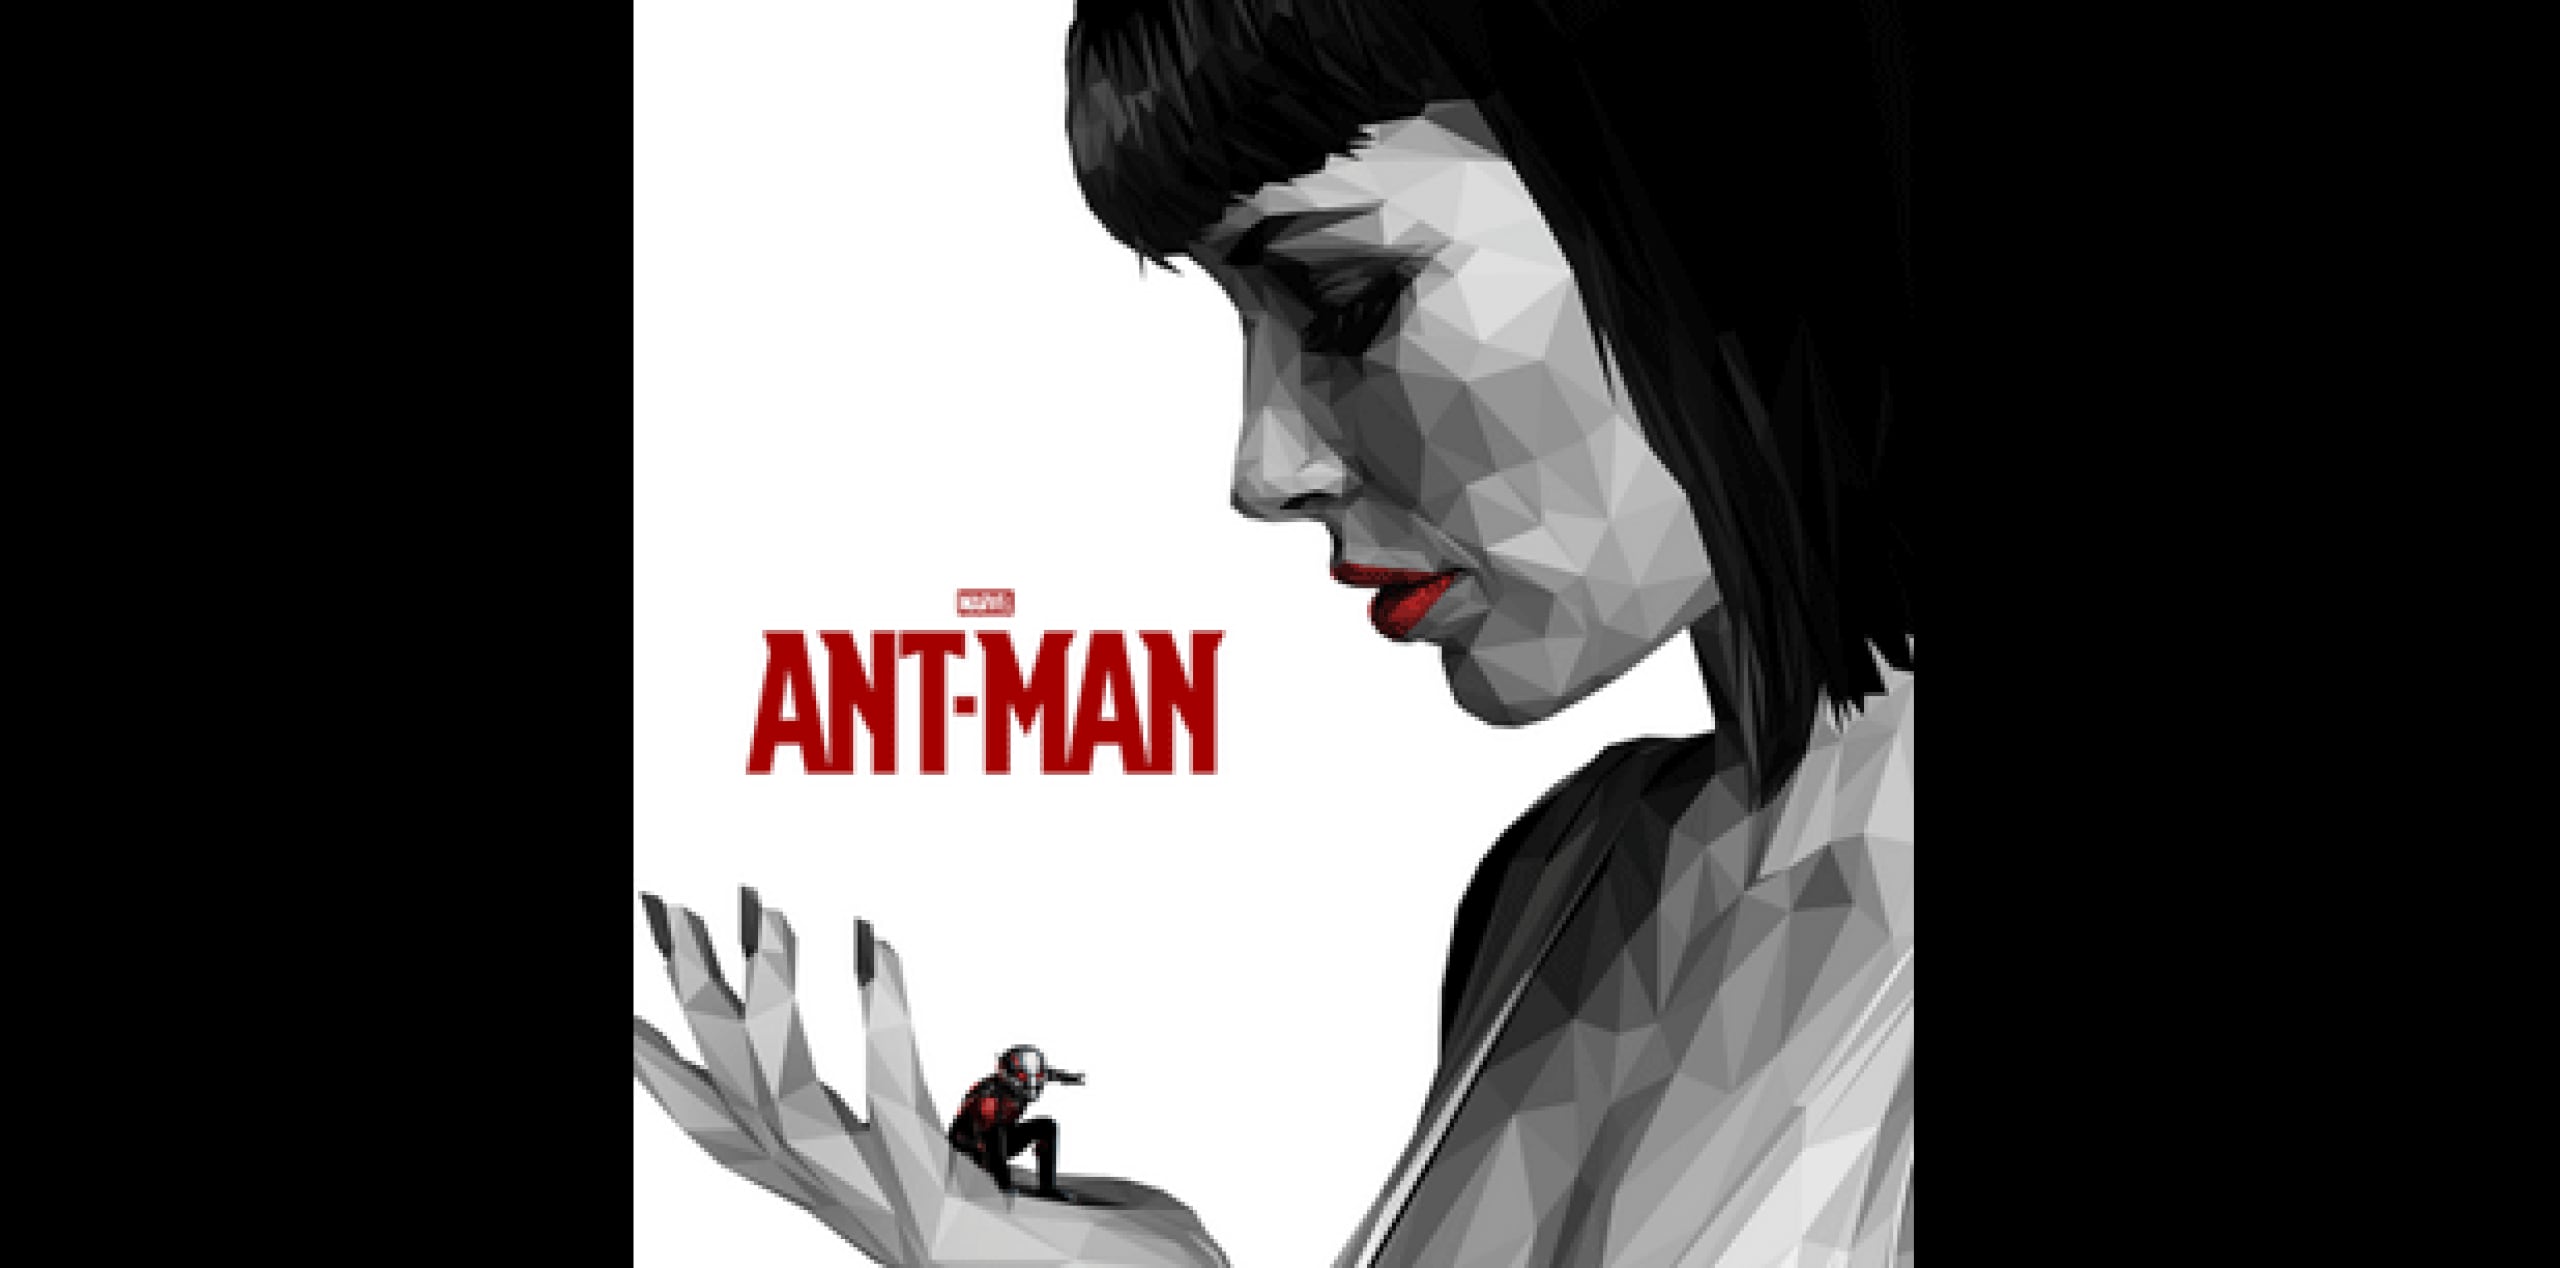 La película "Ant-Man" termina con, cuidado con la siguiente revelación, el personaje de Evangeline Lilly, Hope Van Dyne, recibiendo el prototipo de traje de superhéroe de su fallecida madre y su alter ego. (Twitter)